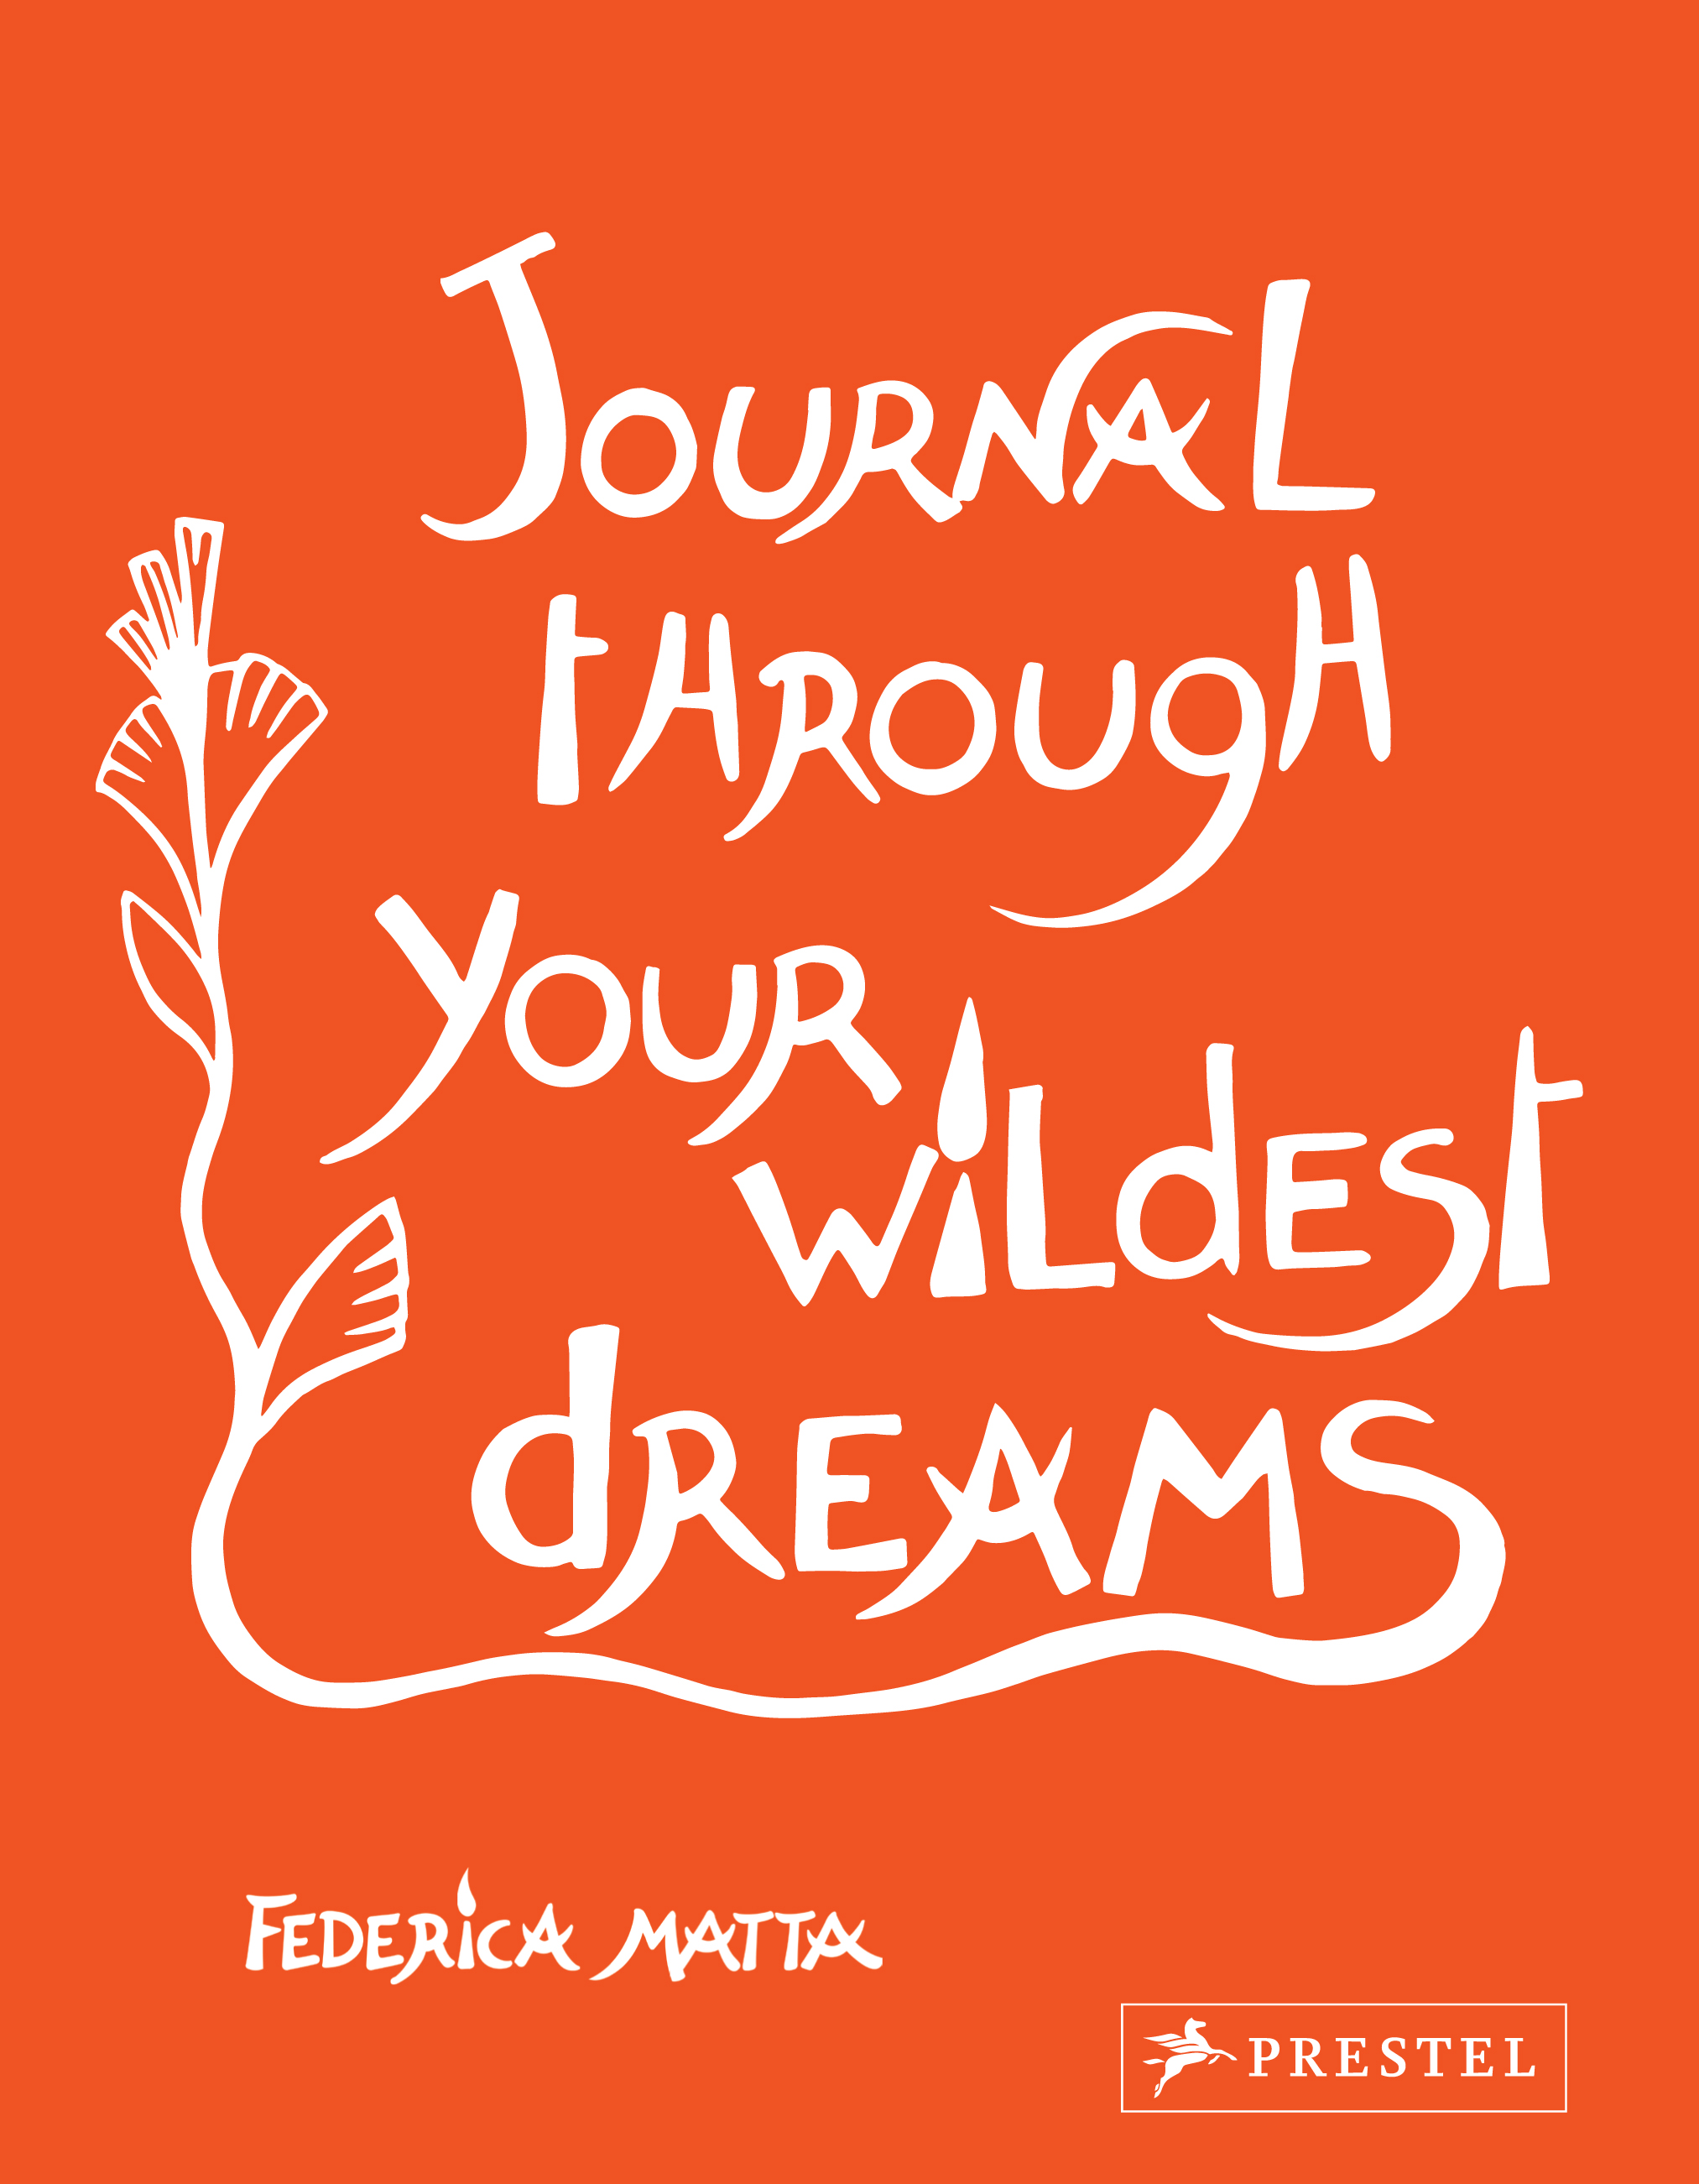 Journal Wildest Dreams Matta_S17.jpg